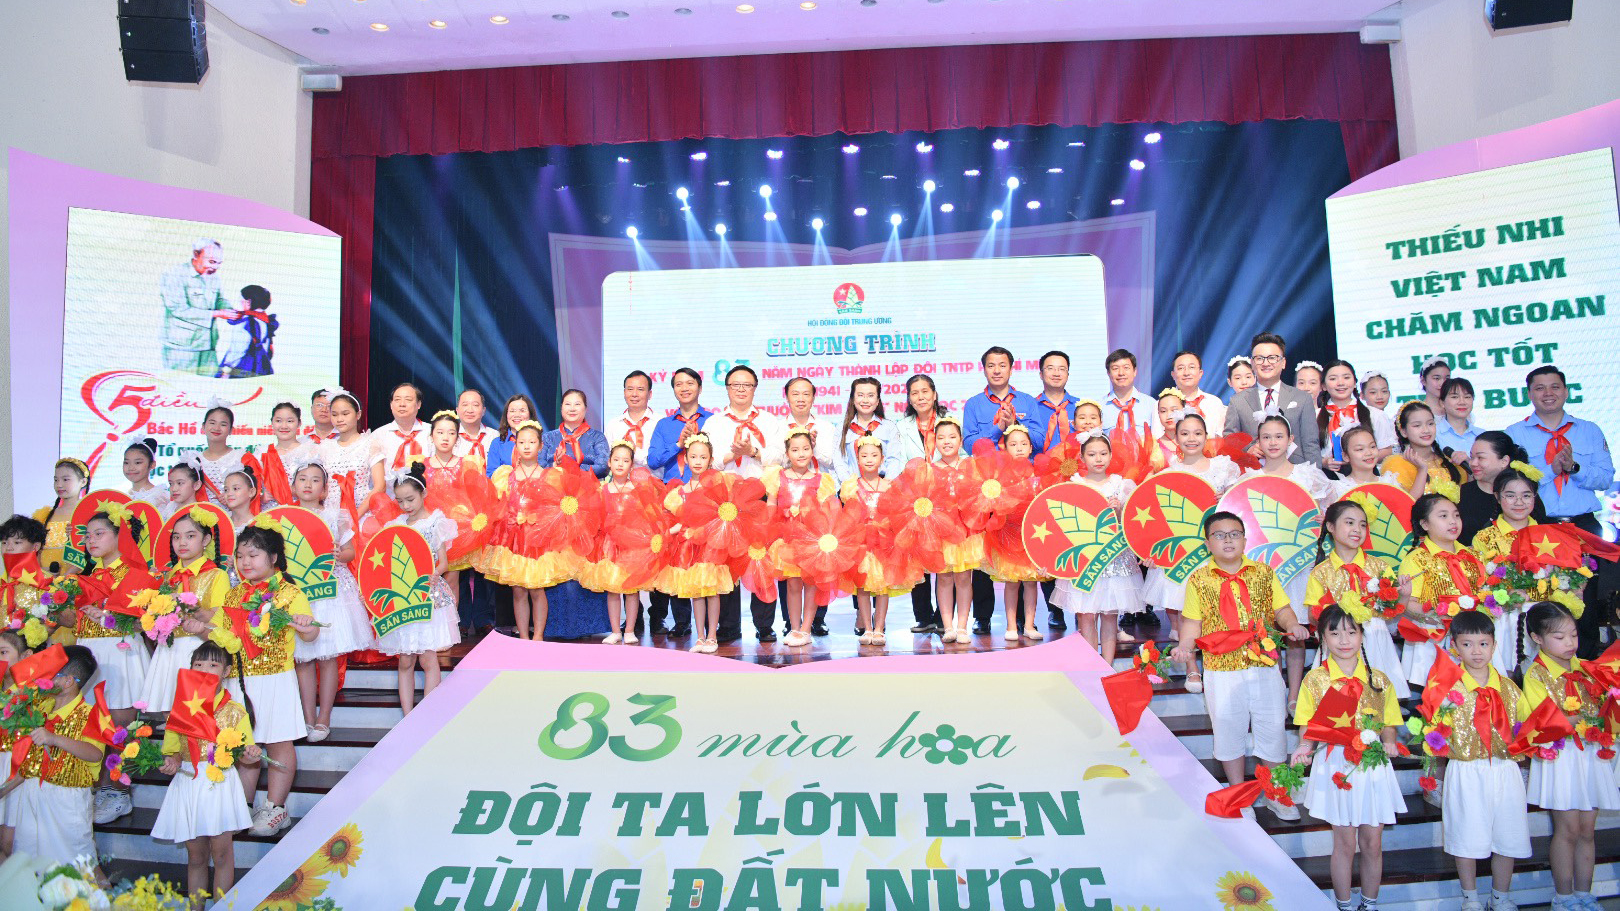 Kỷ niệm 83 năm ngày Thành lập Đội TNTP Hồ Chí Minh, trao giải Kim Đồng cho 125 đội viên